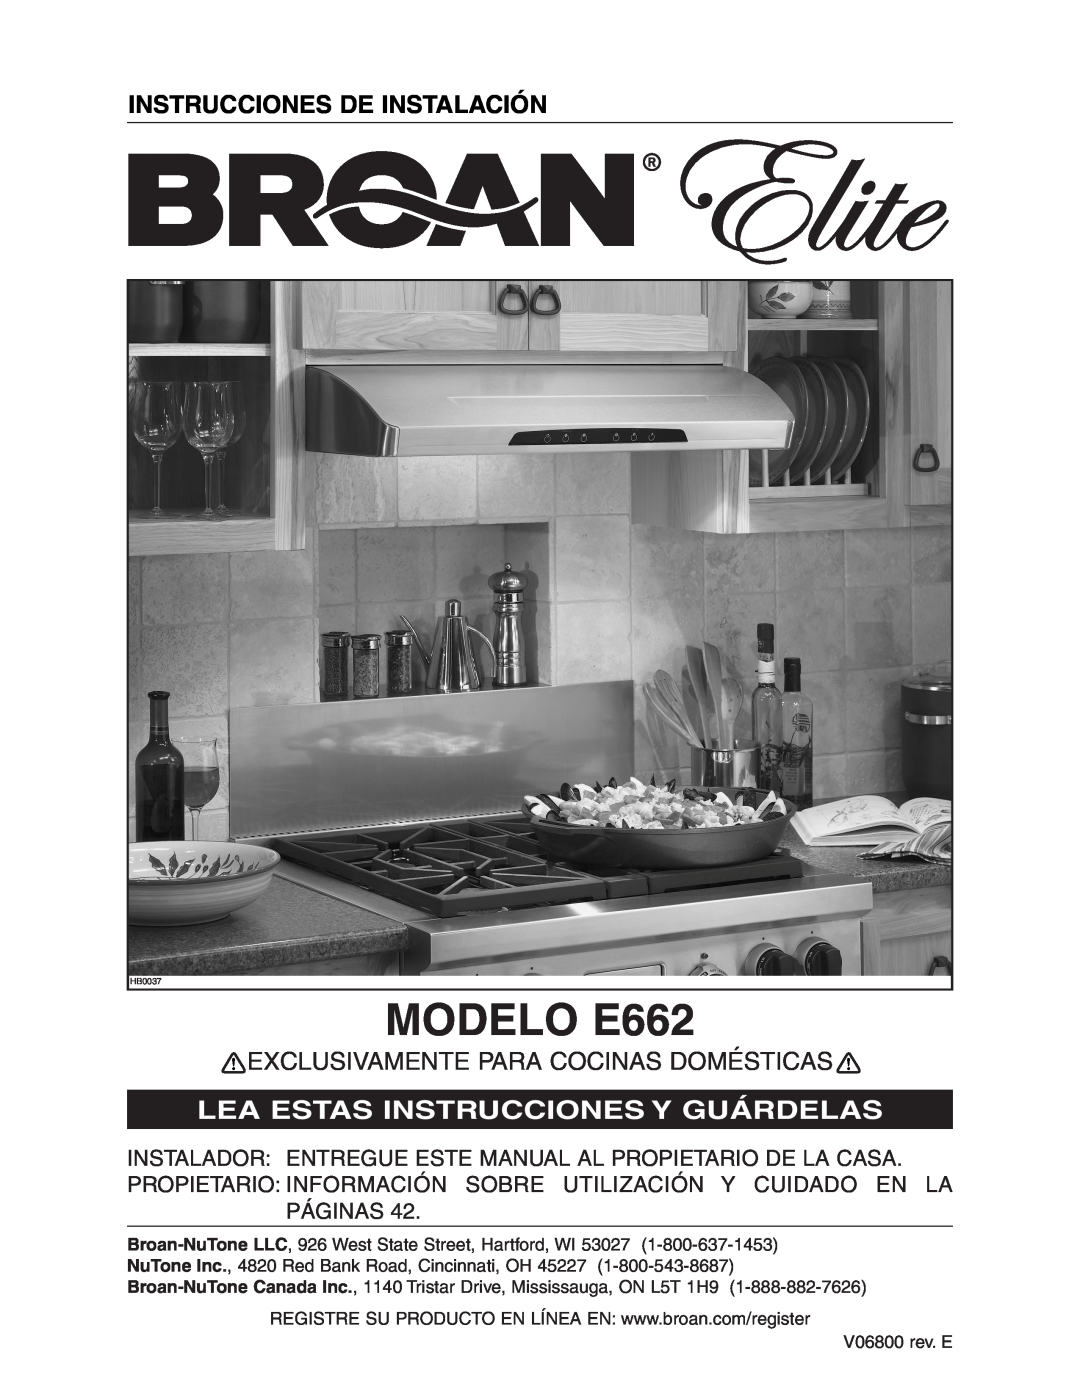 Broan Model E662 MODELO E662, Instrucciones De Instalación, Exclusivamente Para Cocinas Domésticas 